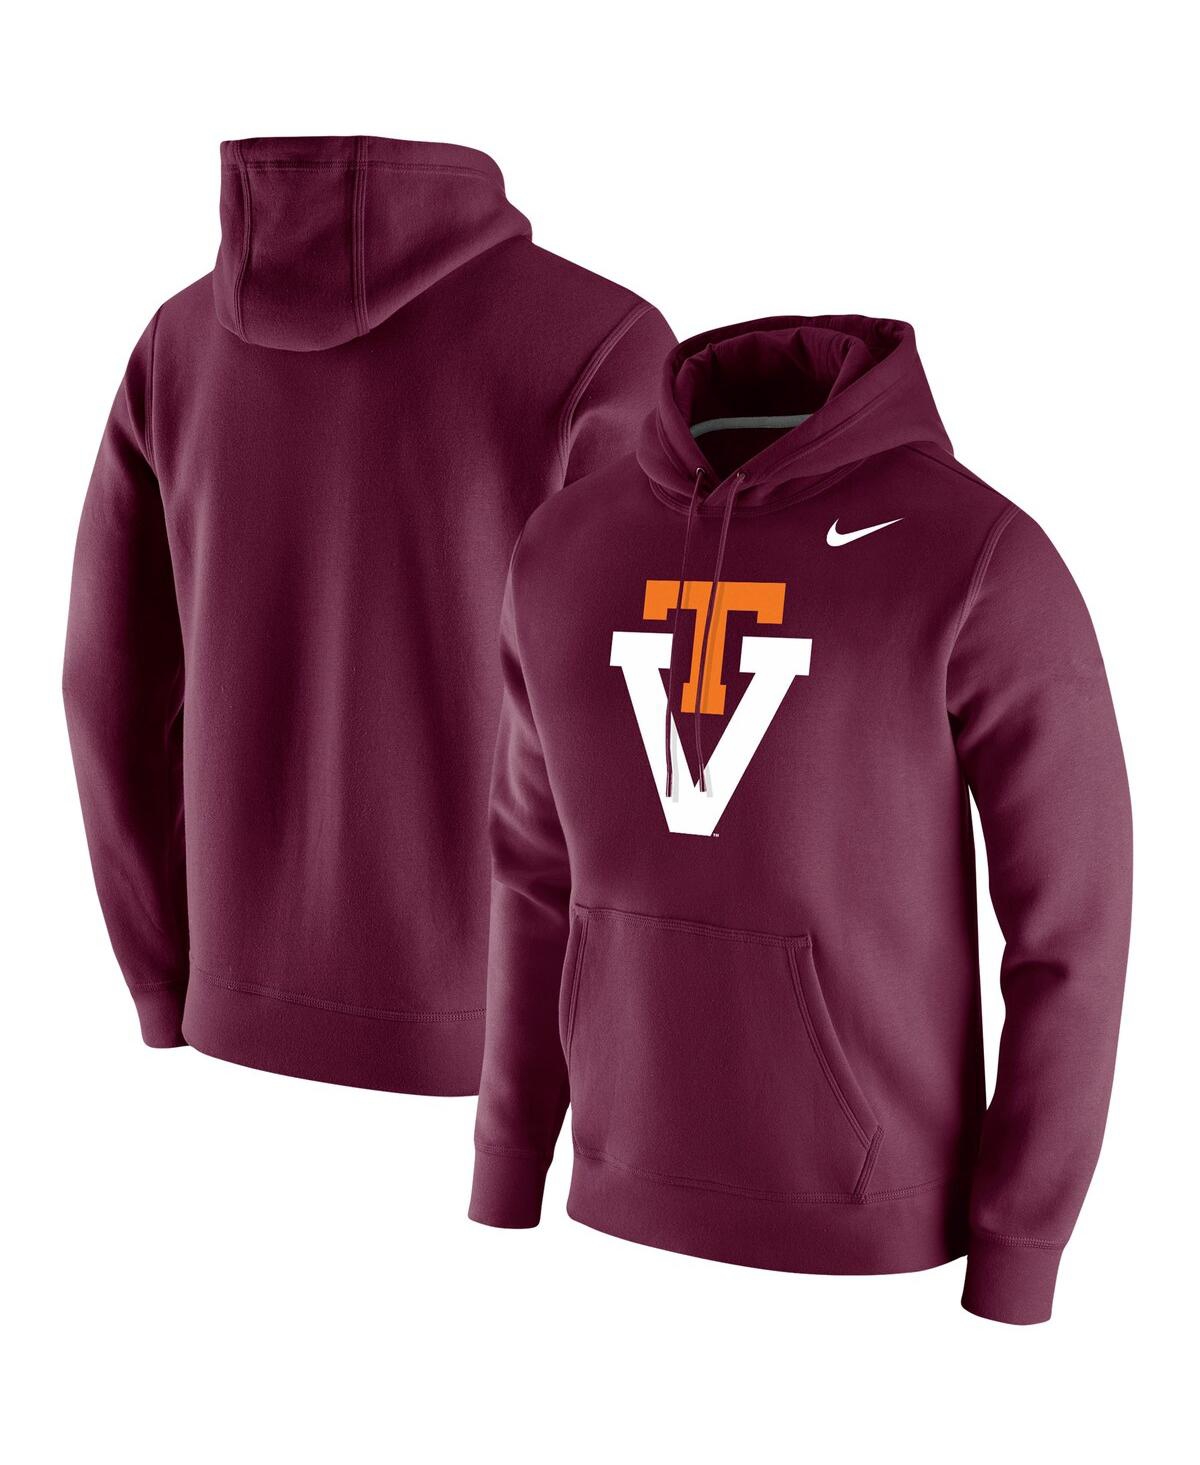 Shop Nike Men's Maroon Virginia Tech Hokies Vintage-like School Logo Pullover Hoodie